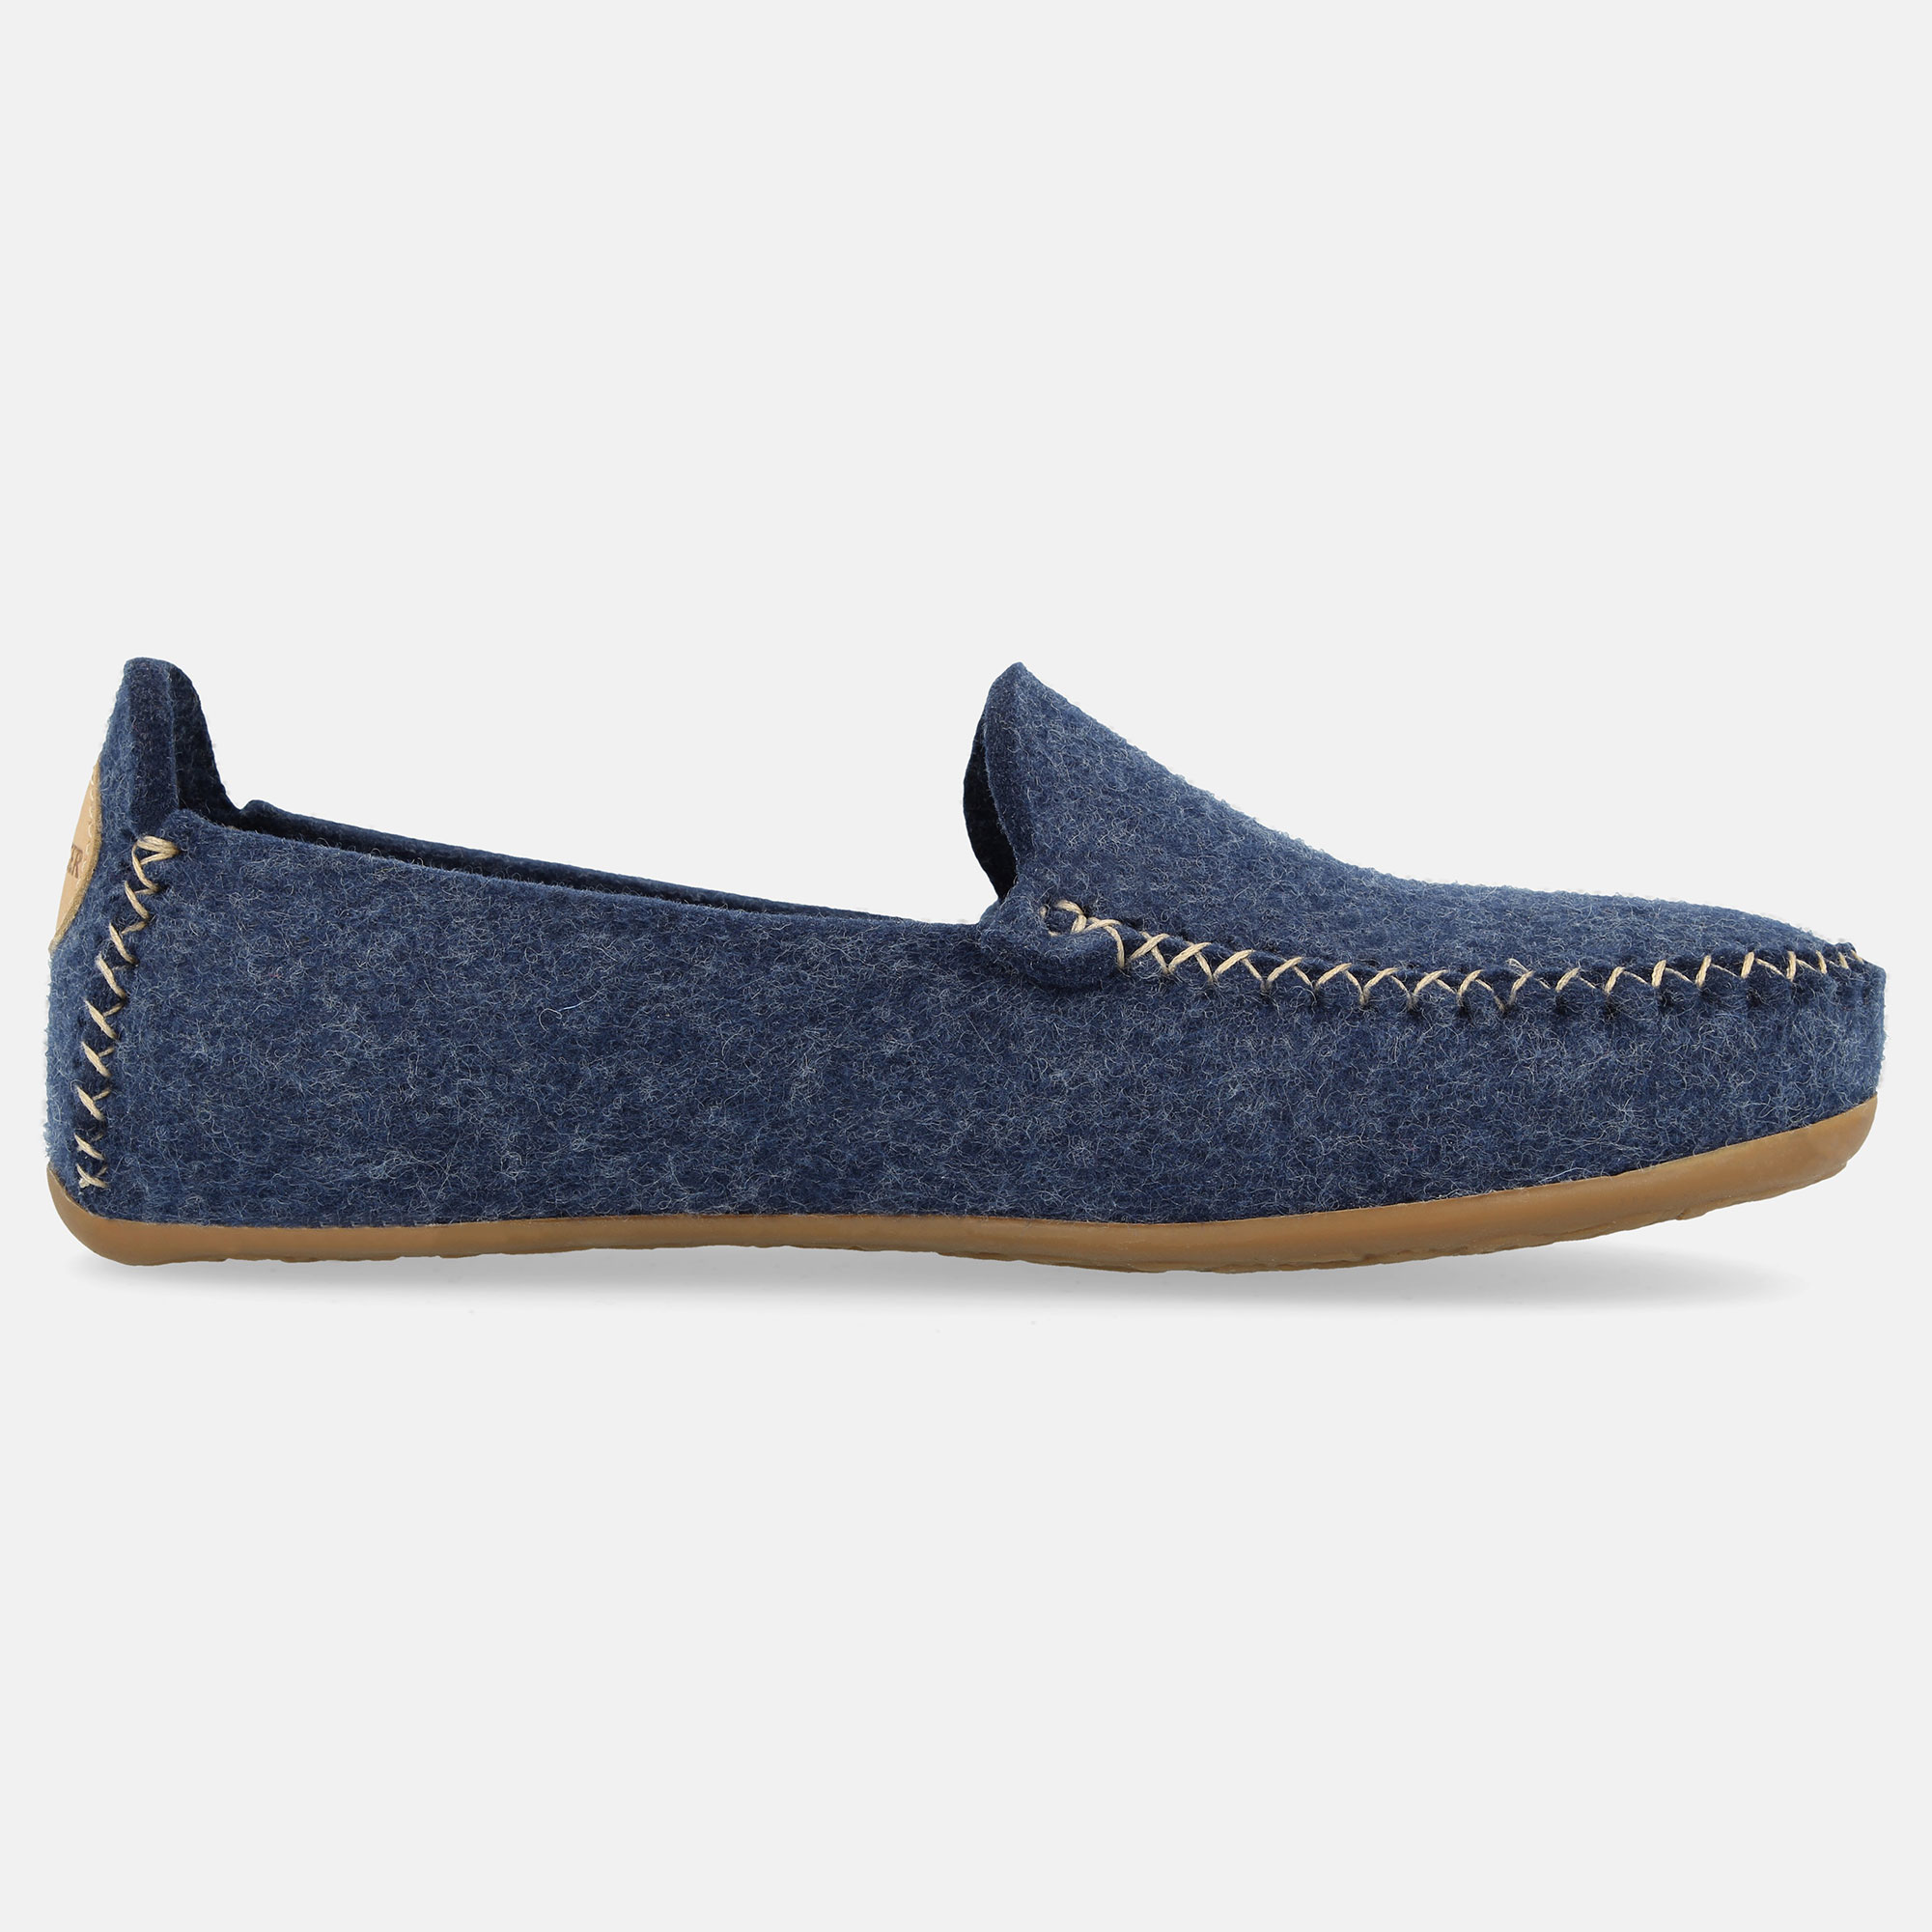 Pantoffel-Blau-Jeans-48100872-Mokassin-Links-Innen